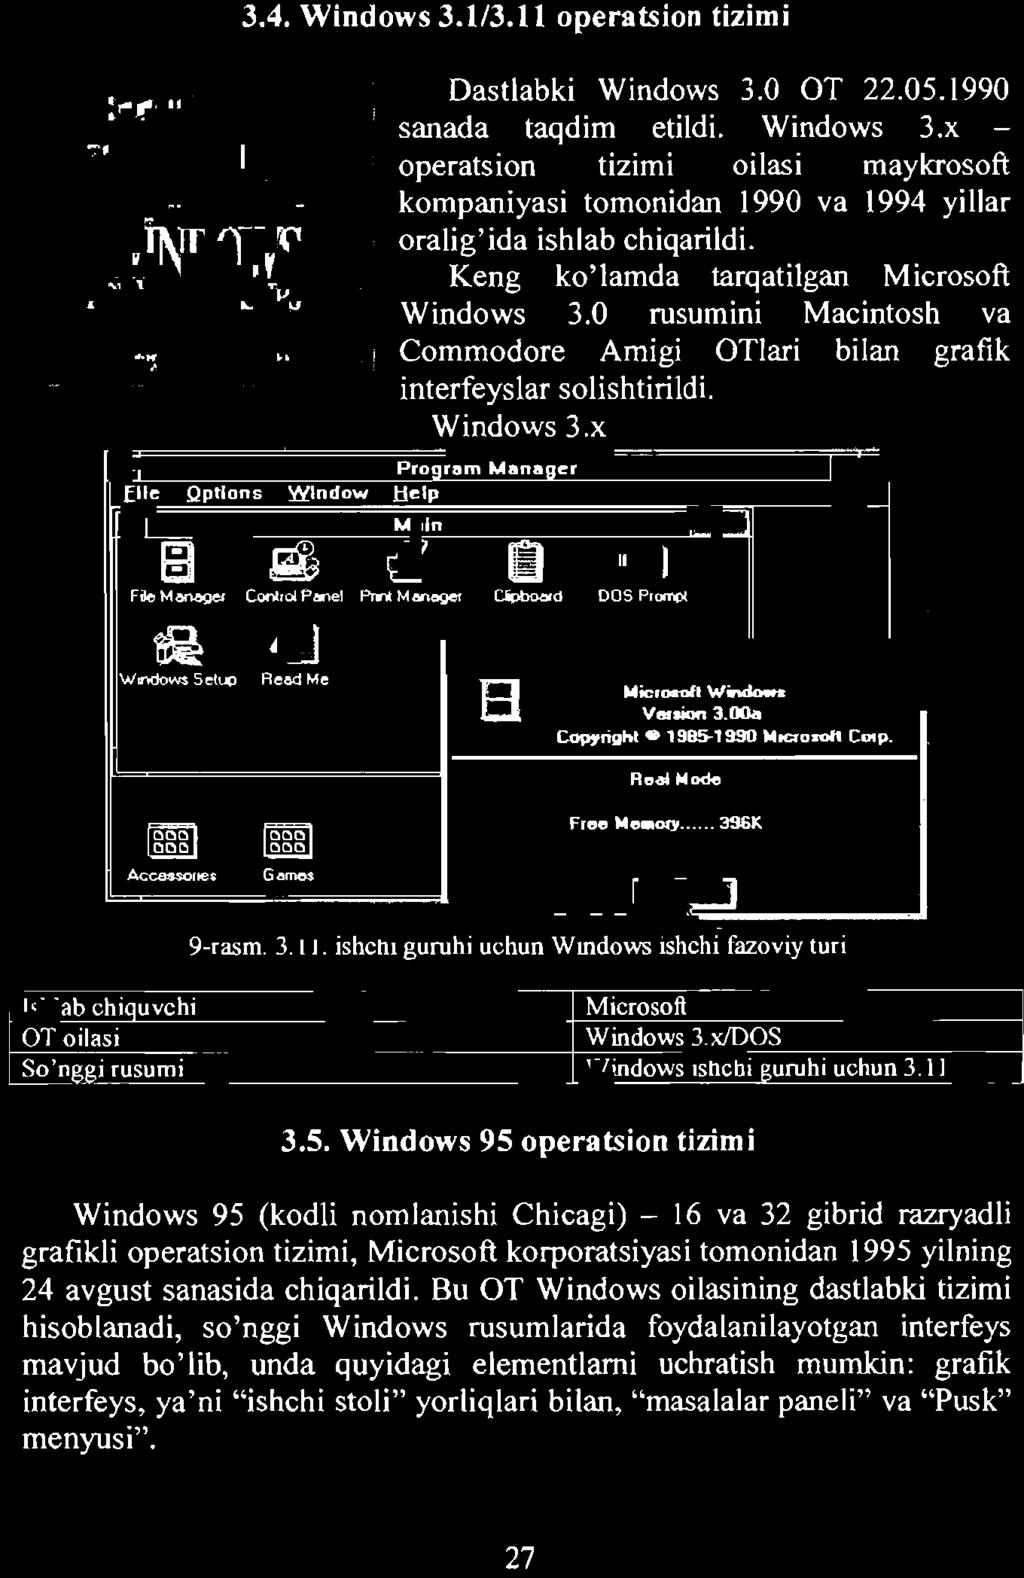 DOS Windows ishchi guruhi uchun 3, II 3.5.